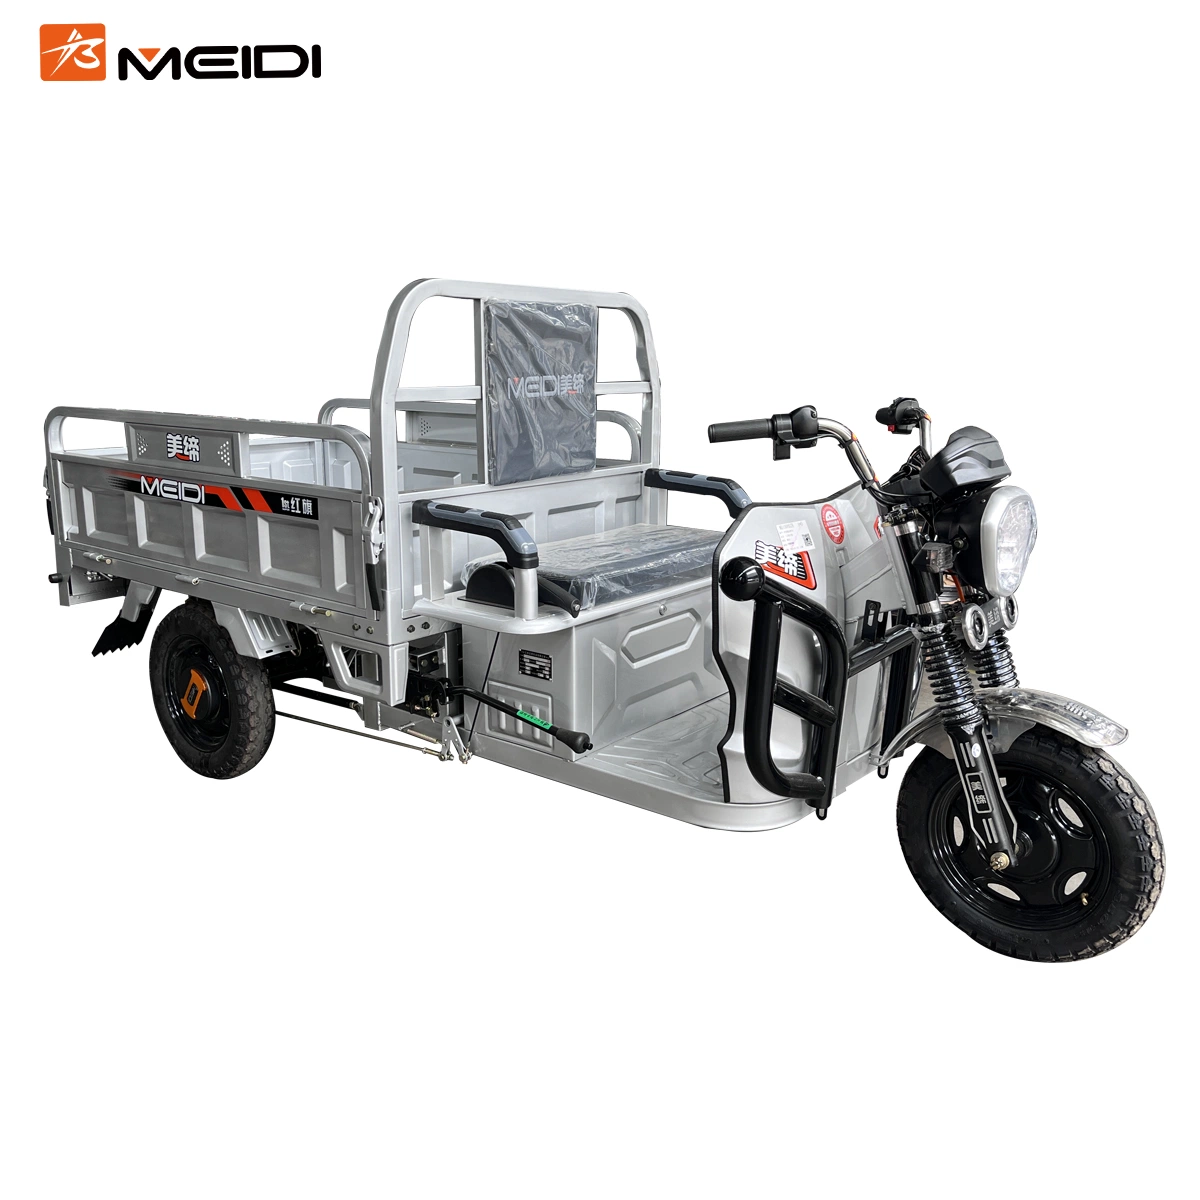 Highly Popular Electric Motor Bike for Cargo Transportation - Manufacturer Direct Sales